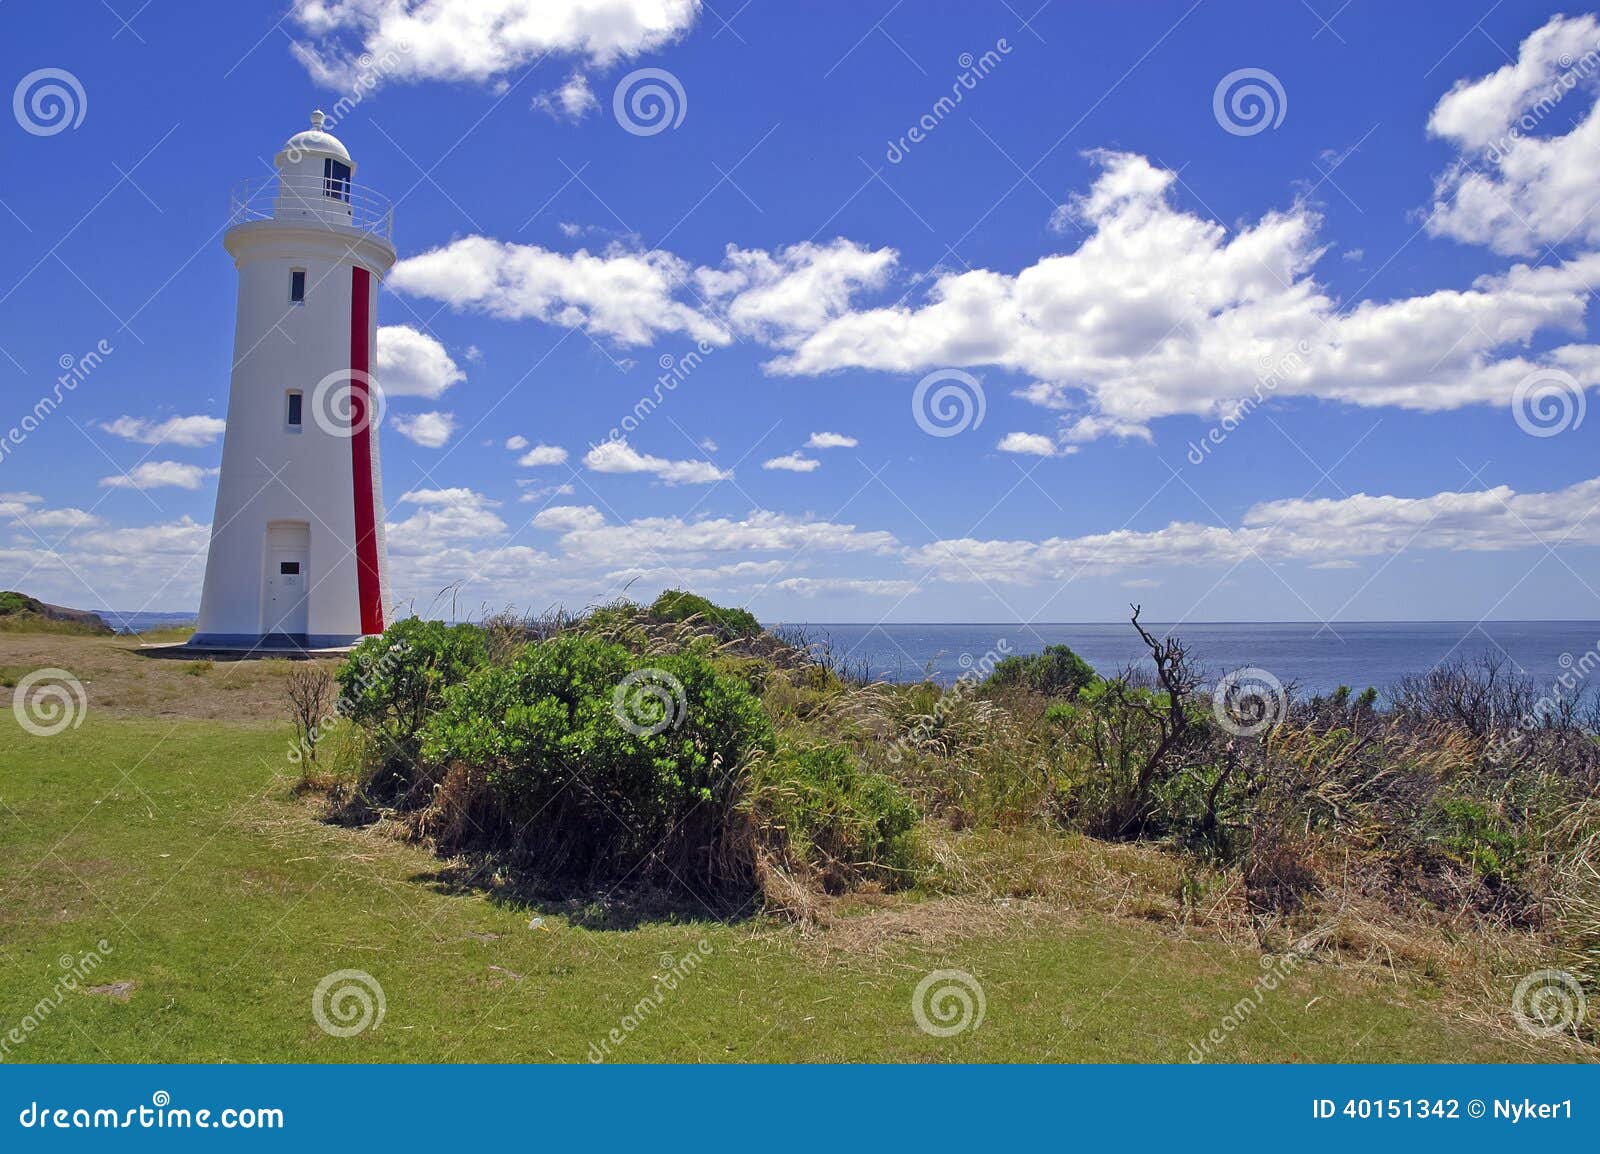 mersey bluff lighthouse in tasmania, australia